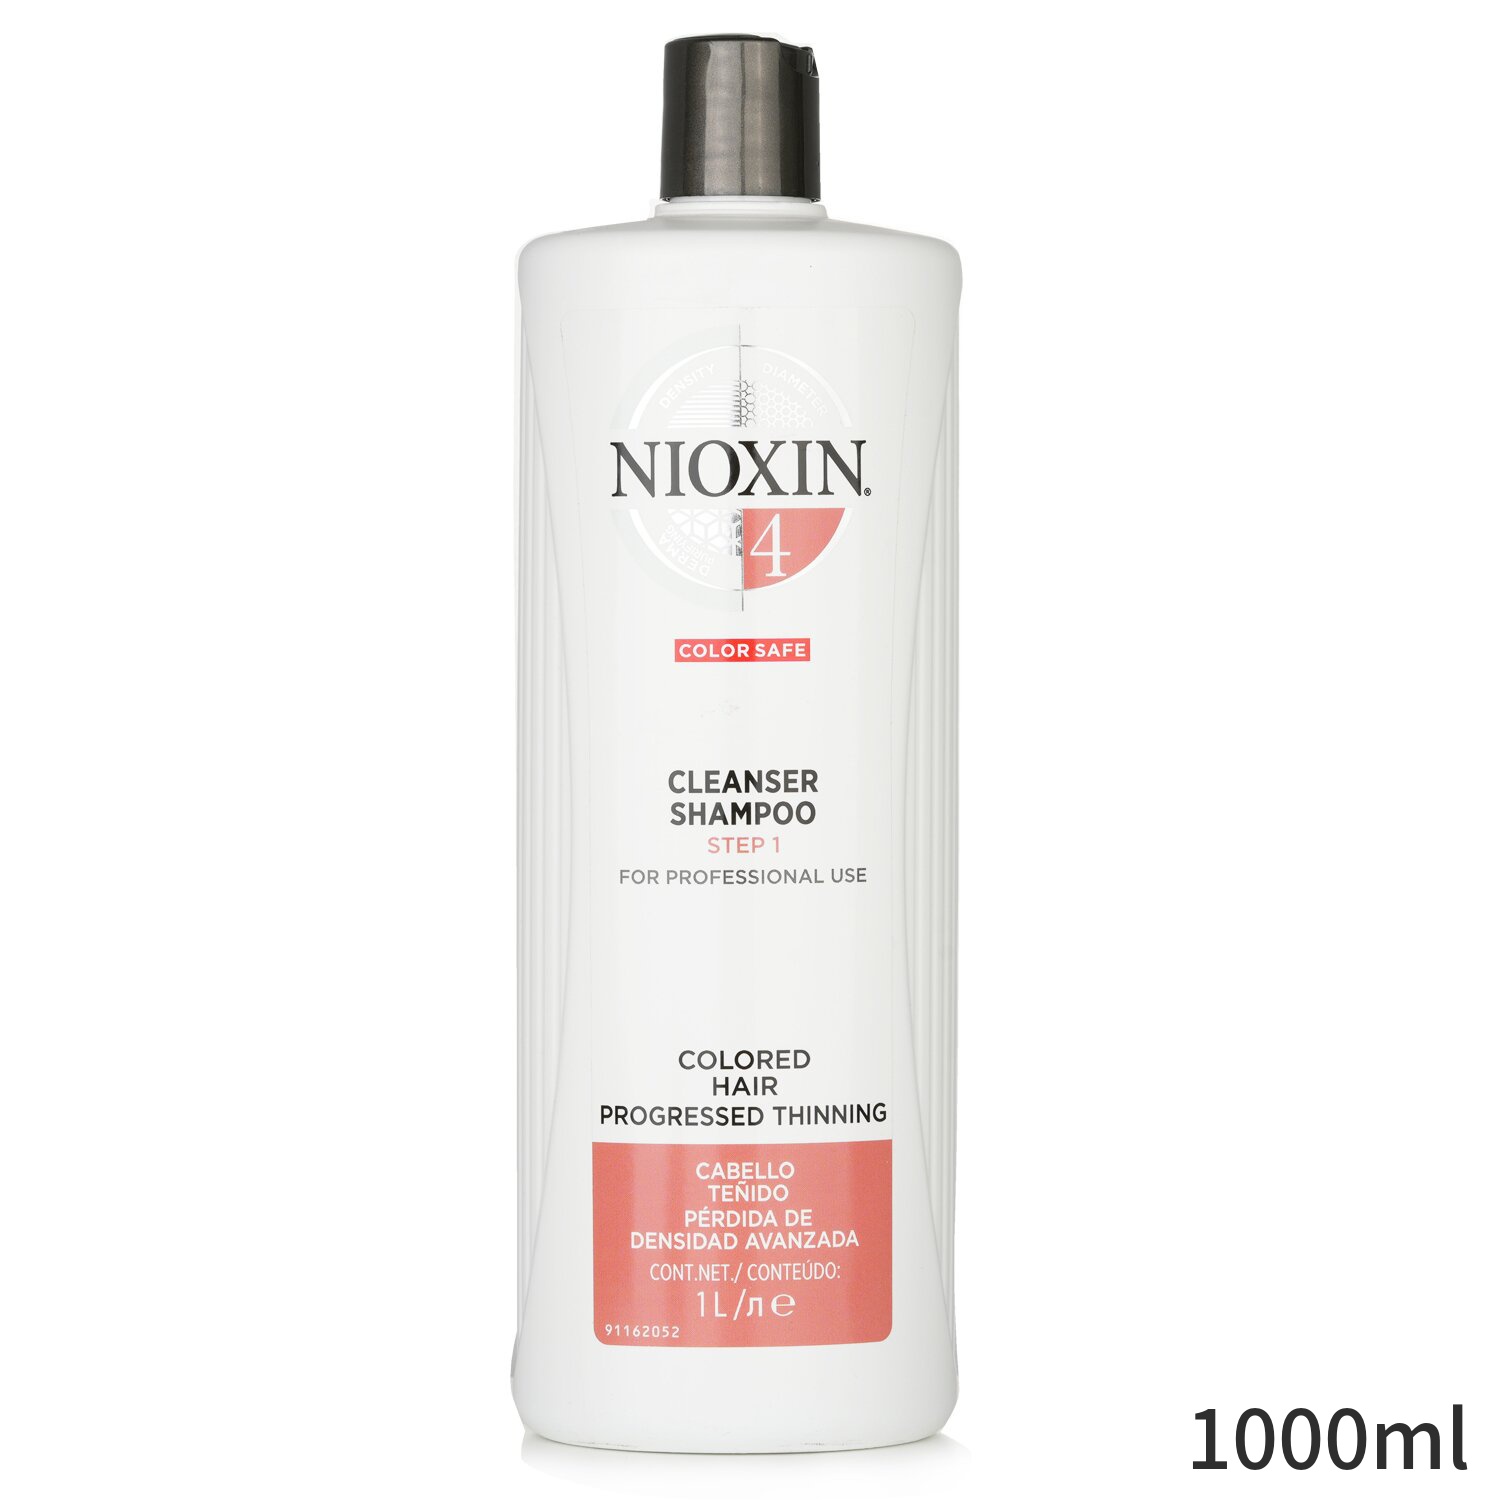 ナイオキシン シャンプー Nioxin System 4 Cleanser Shampoo Step 1 1000ml ヘアケア 母の日 プレゼント ギフト 2023 人気 ブランド コスメのサムネイル